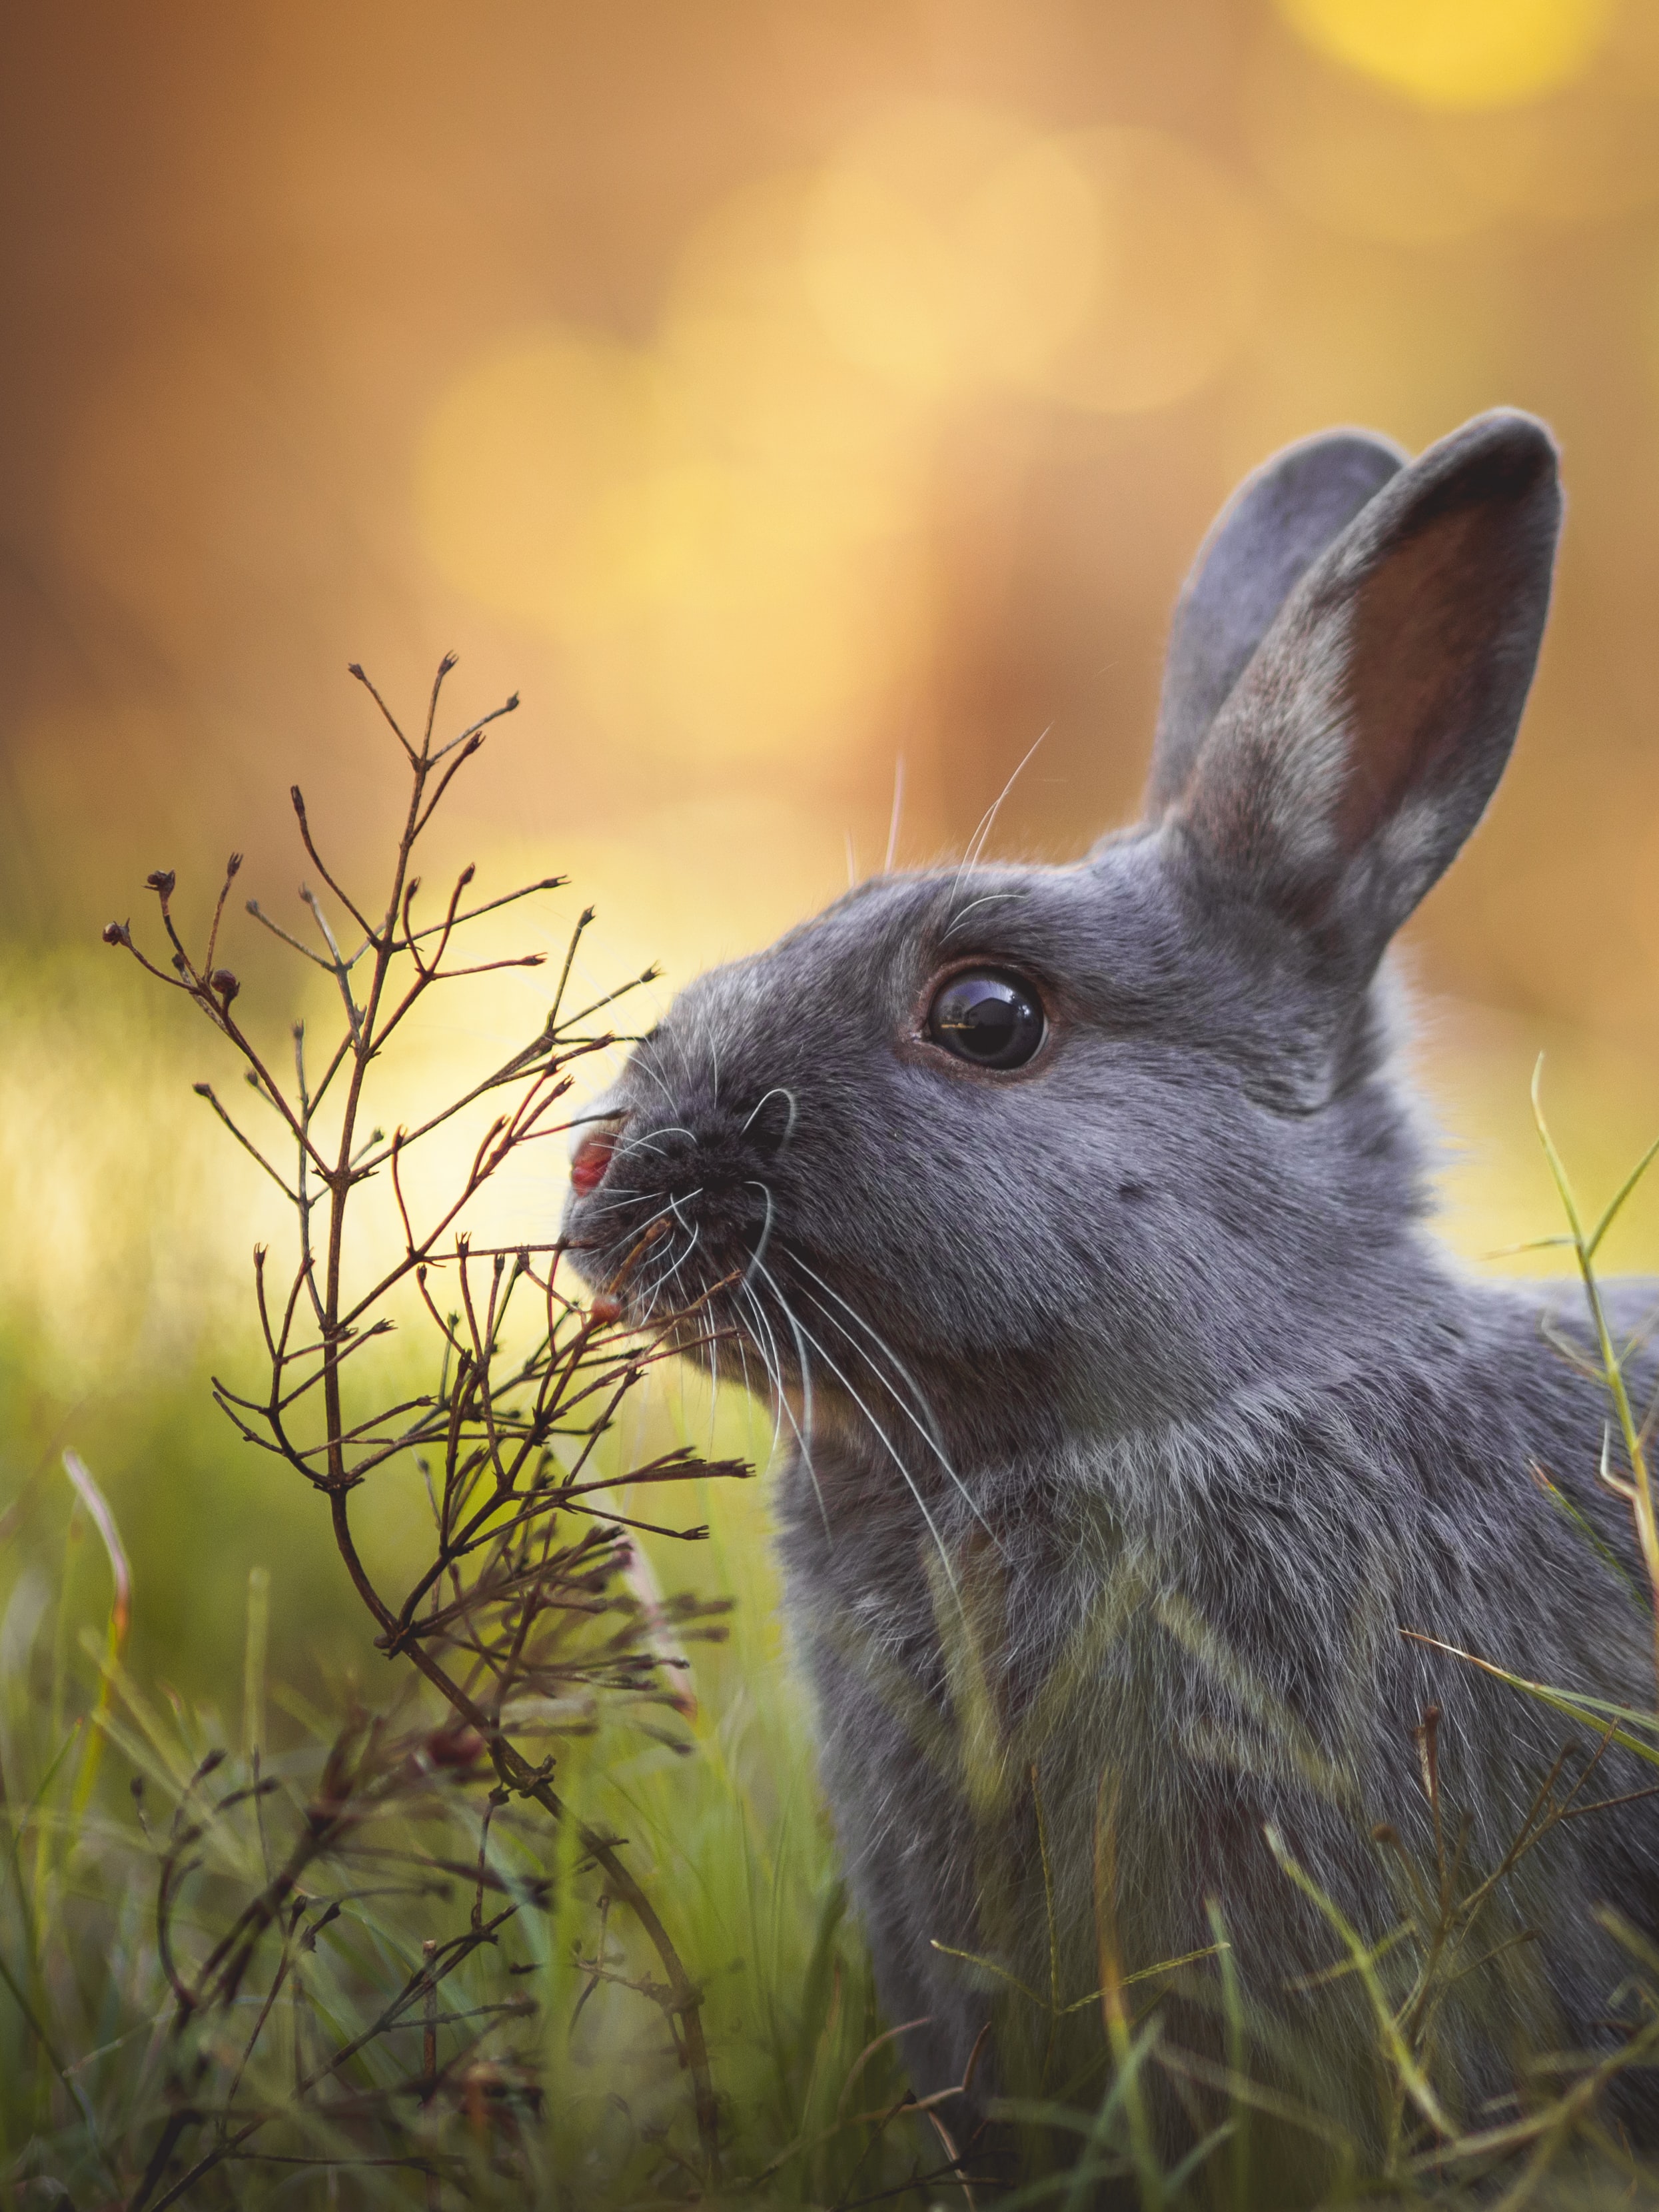 hình ảnh văn phòng - ảnh nền - ảnh thỏ rừng dễ thương